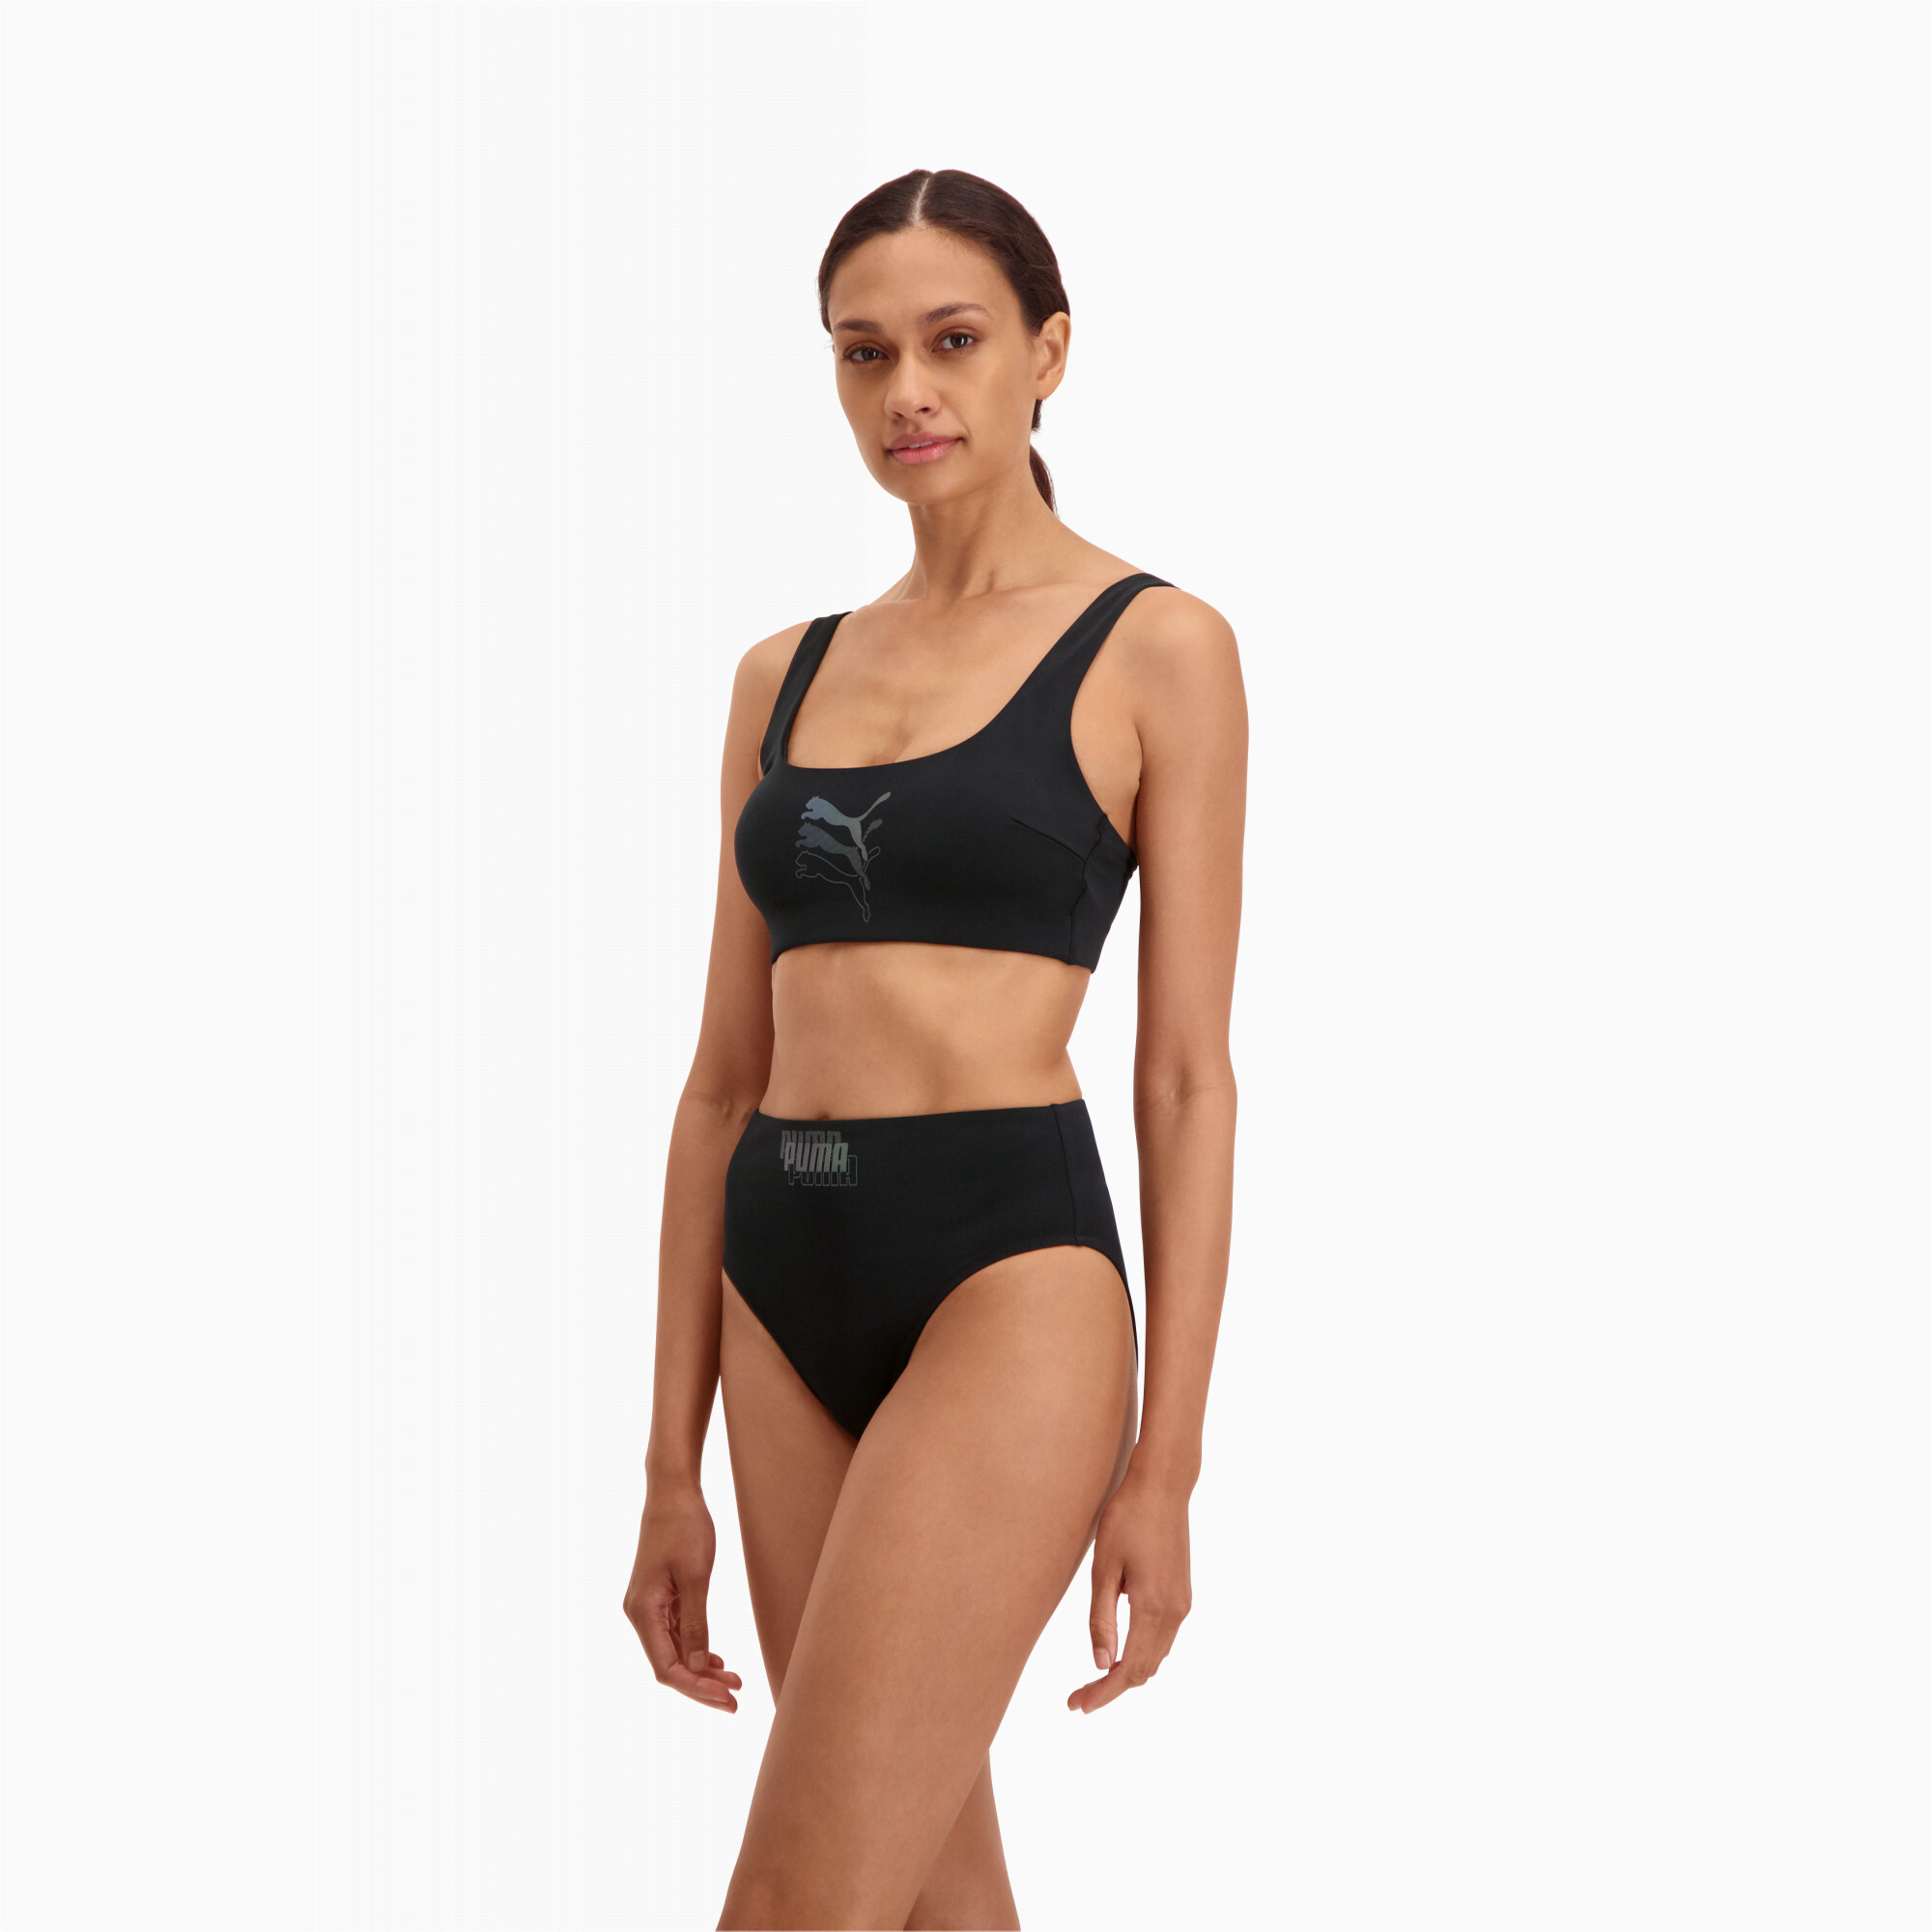 Women's PUMA Swim High Waist Bikini Bottom In Black Combo, Size Large